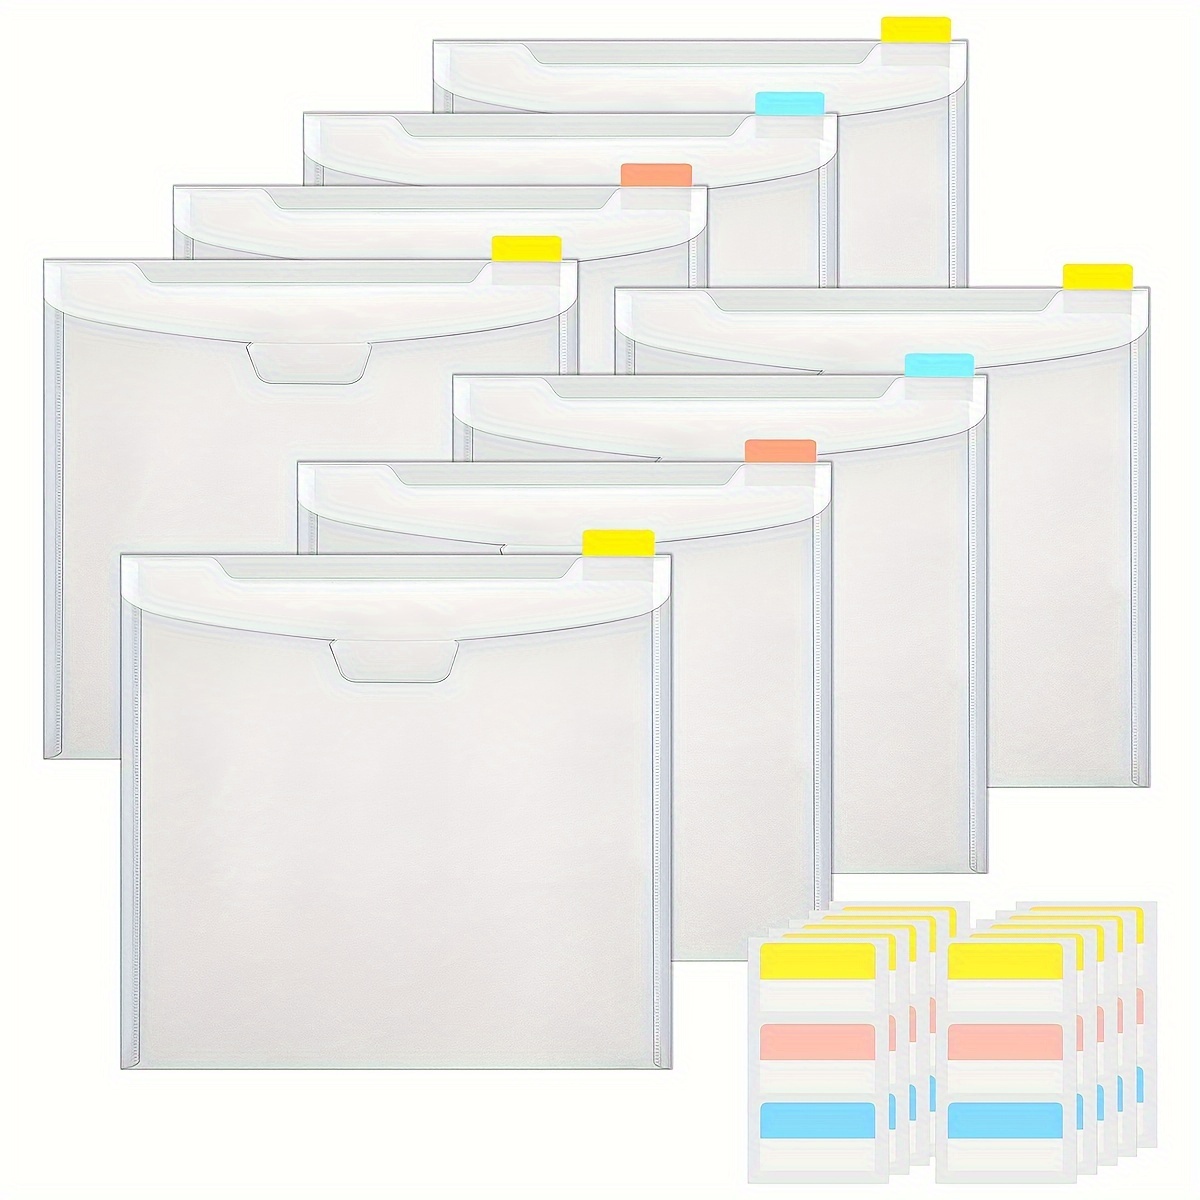 12 x 12 Paper Storage Case  Paper storage, Container store, Scrapbook  paper storage